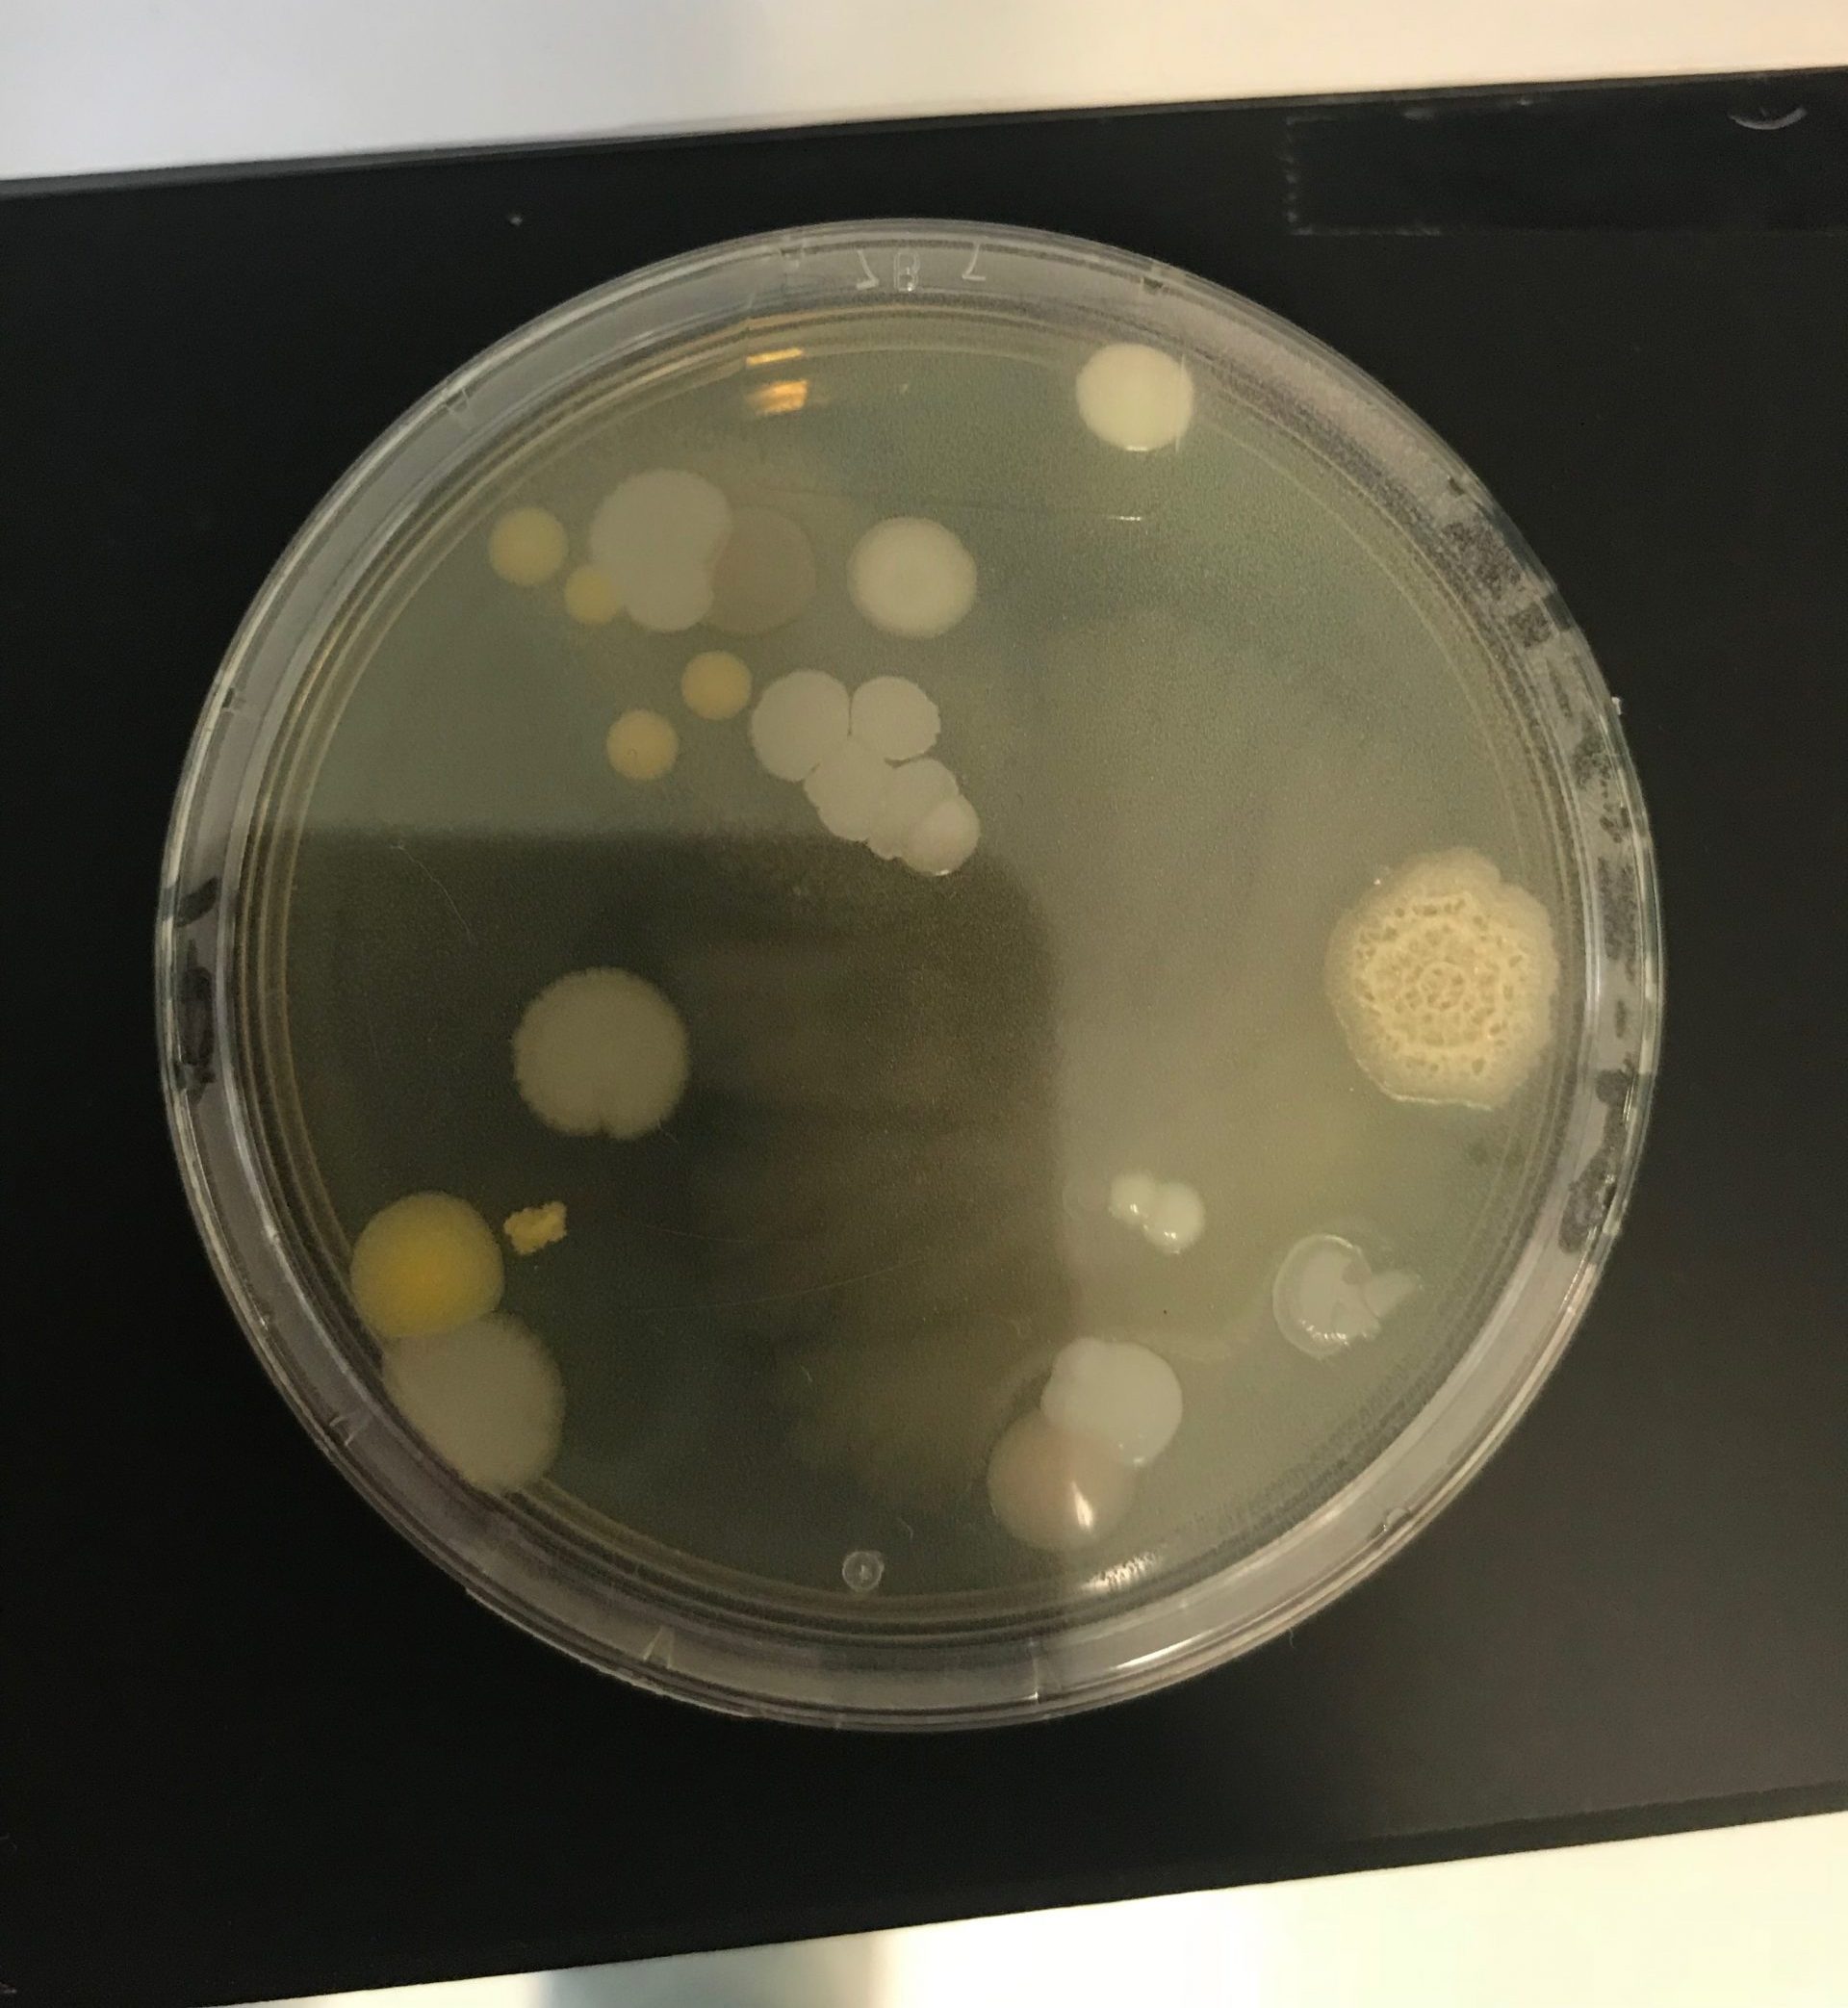 Bacterias en placas Rodac - Programa Microbiología Ambiental en industria de GMP - Dra. Eileen Ruiz - 29/septiembre/2018